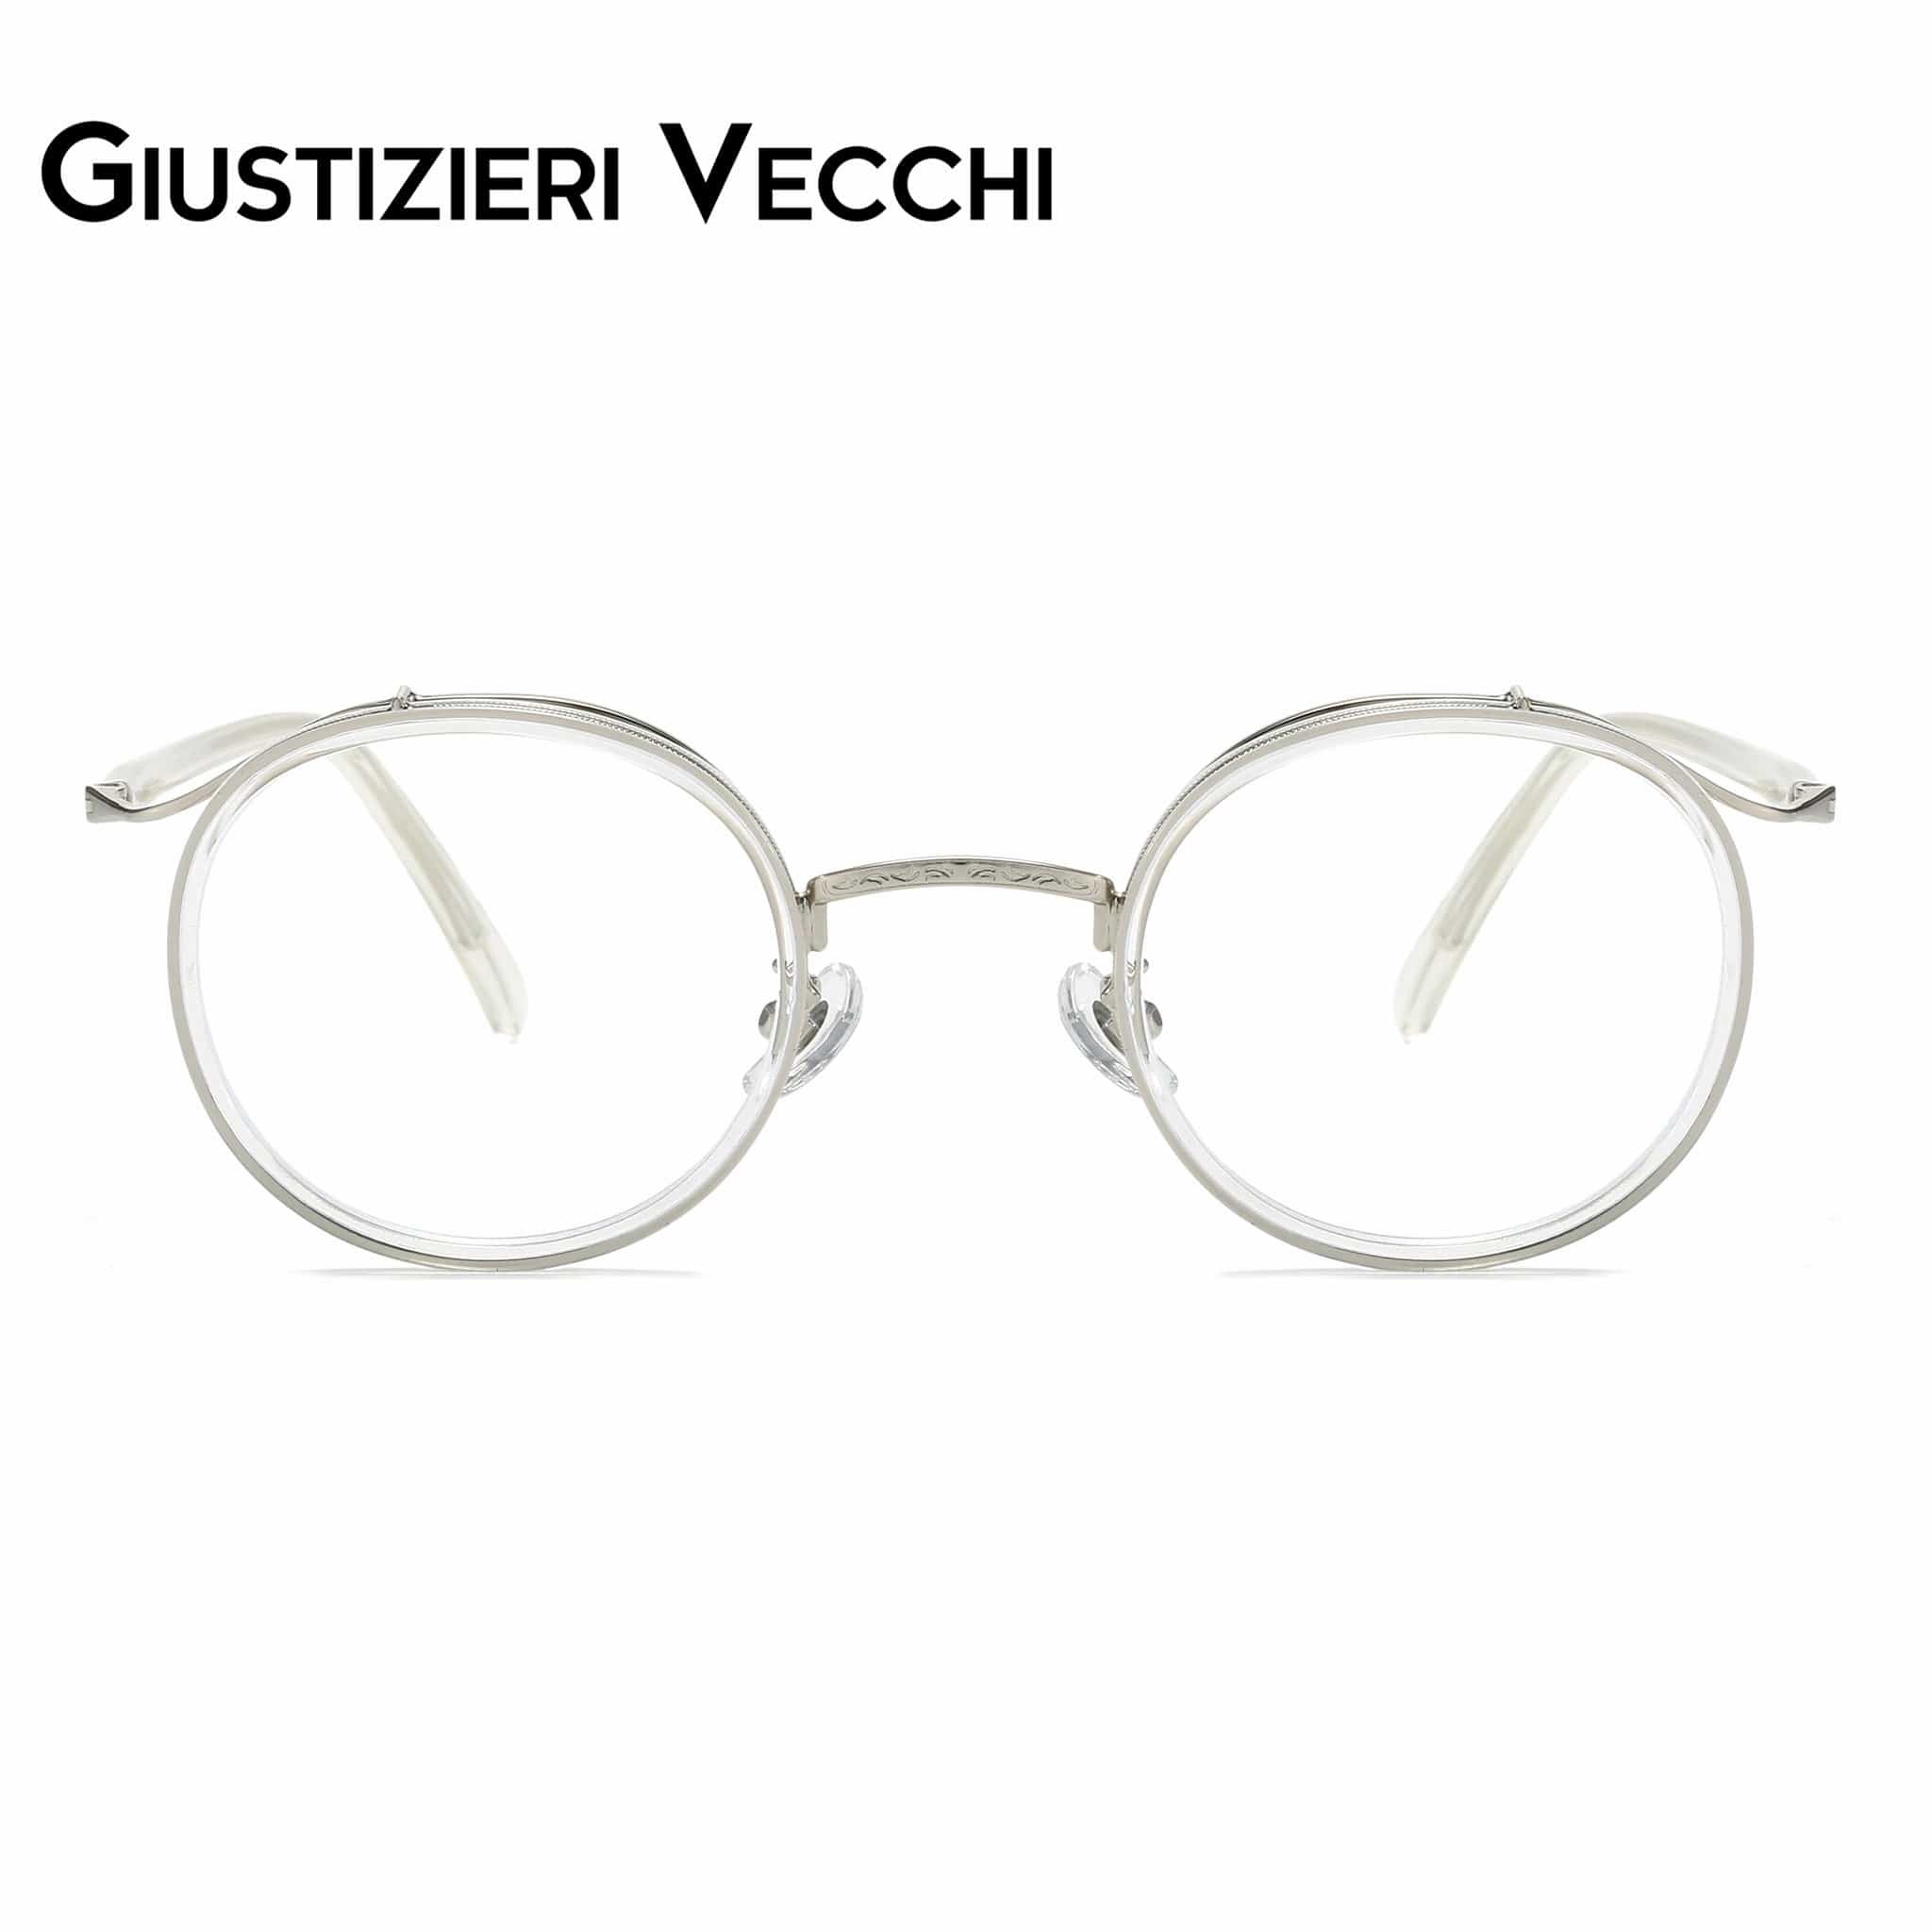 GIUSTIZIERI VECCHI Eyeglasses Small / Clear Crystal Grapevine Uno